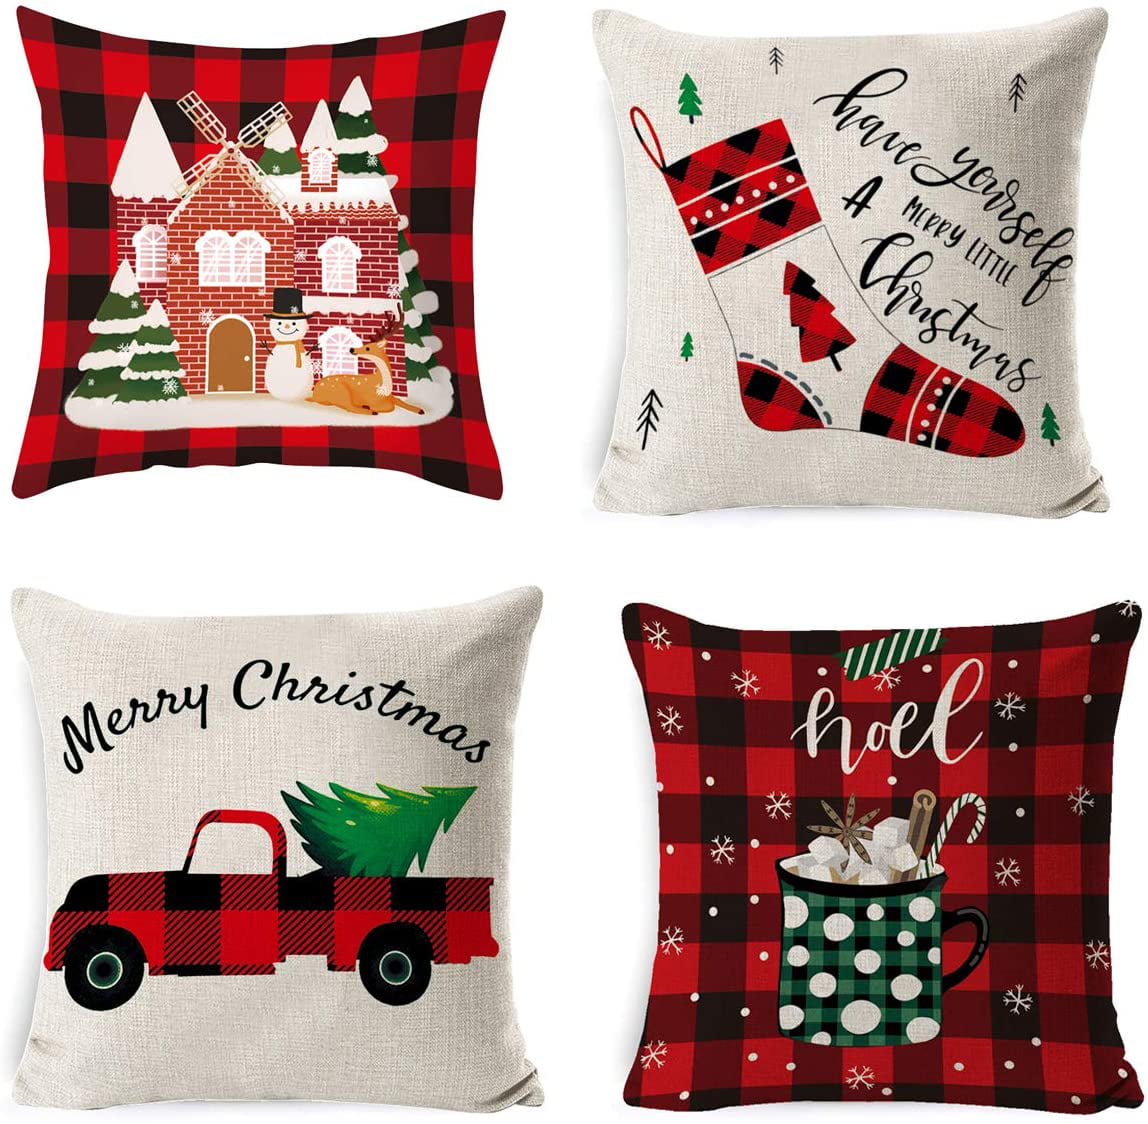 Christmas Xmas Linen Cushion Cover Throw Pillow Case Home Decor Festive Gift NEW 